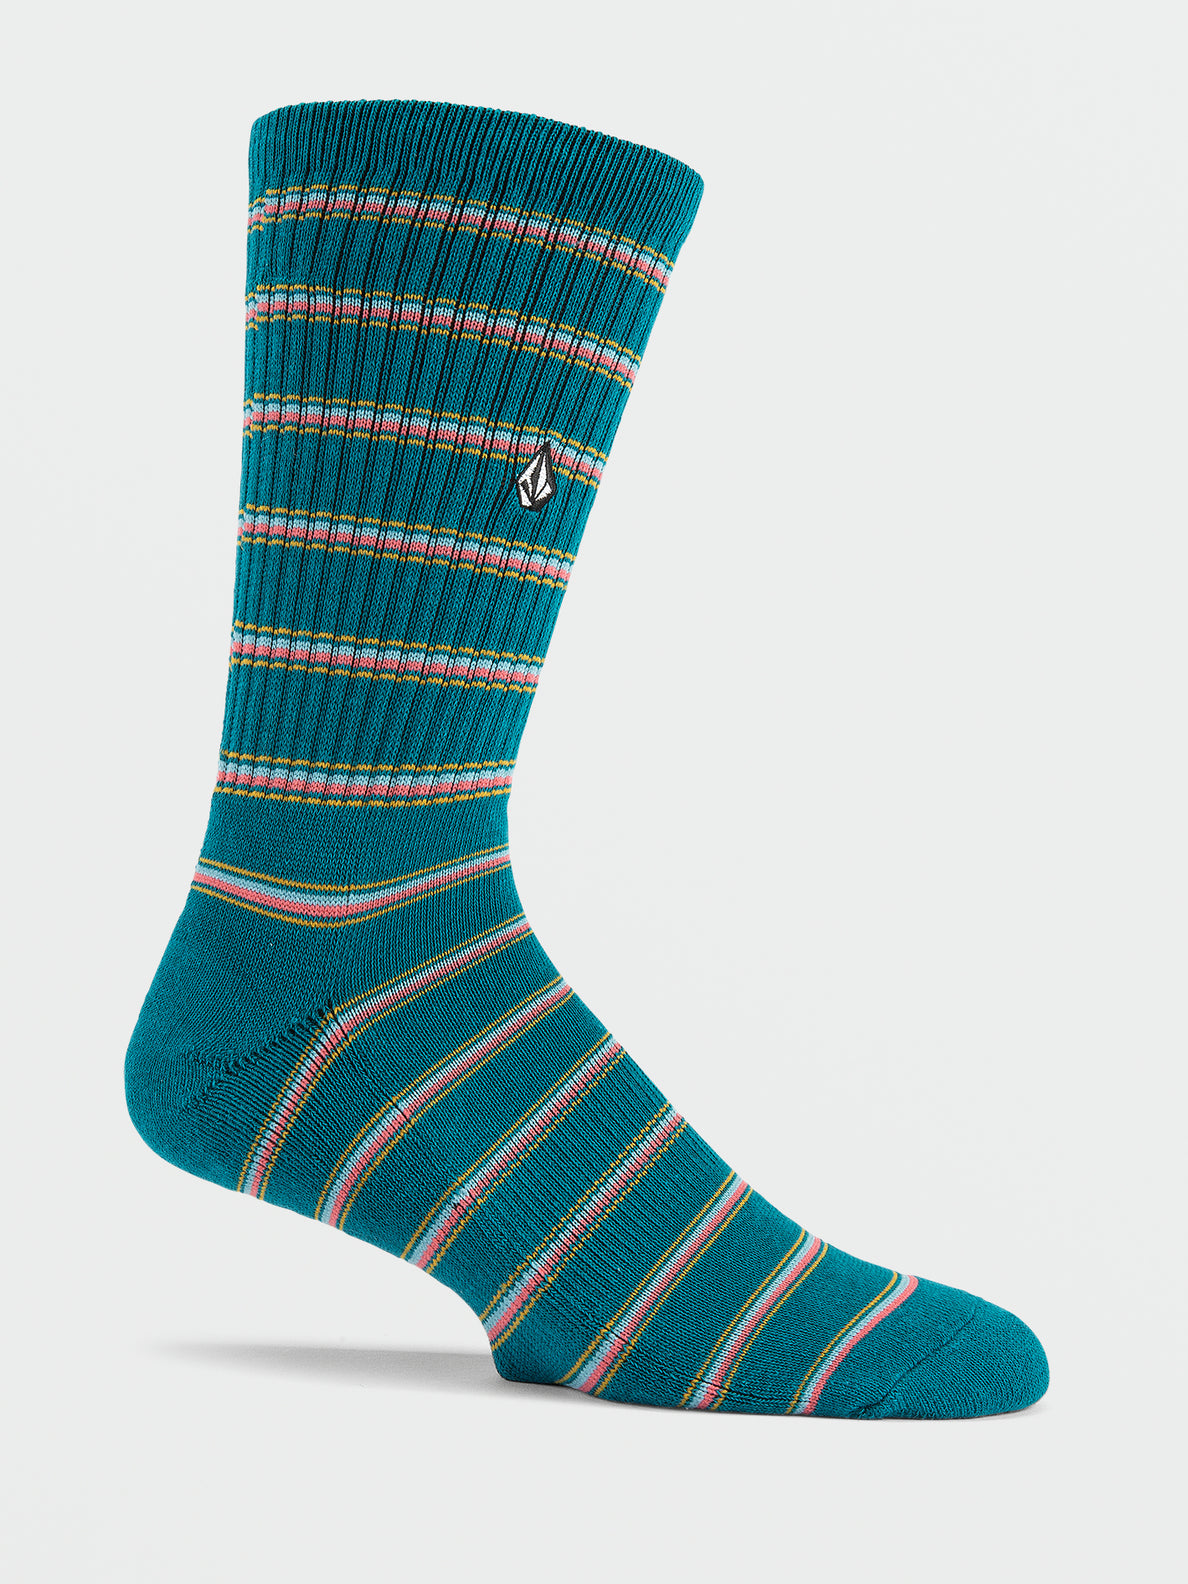 Stoney Stripes Socks - Ocean Teal